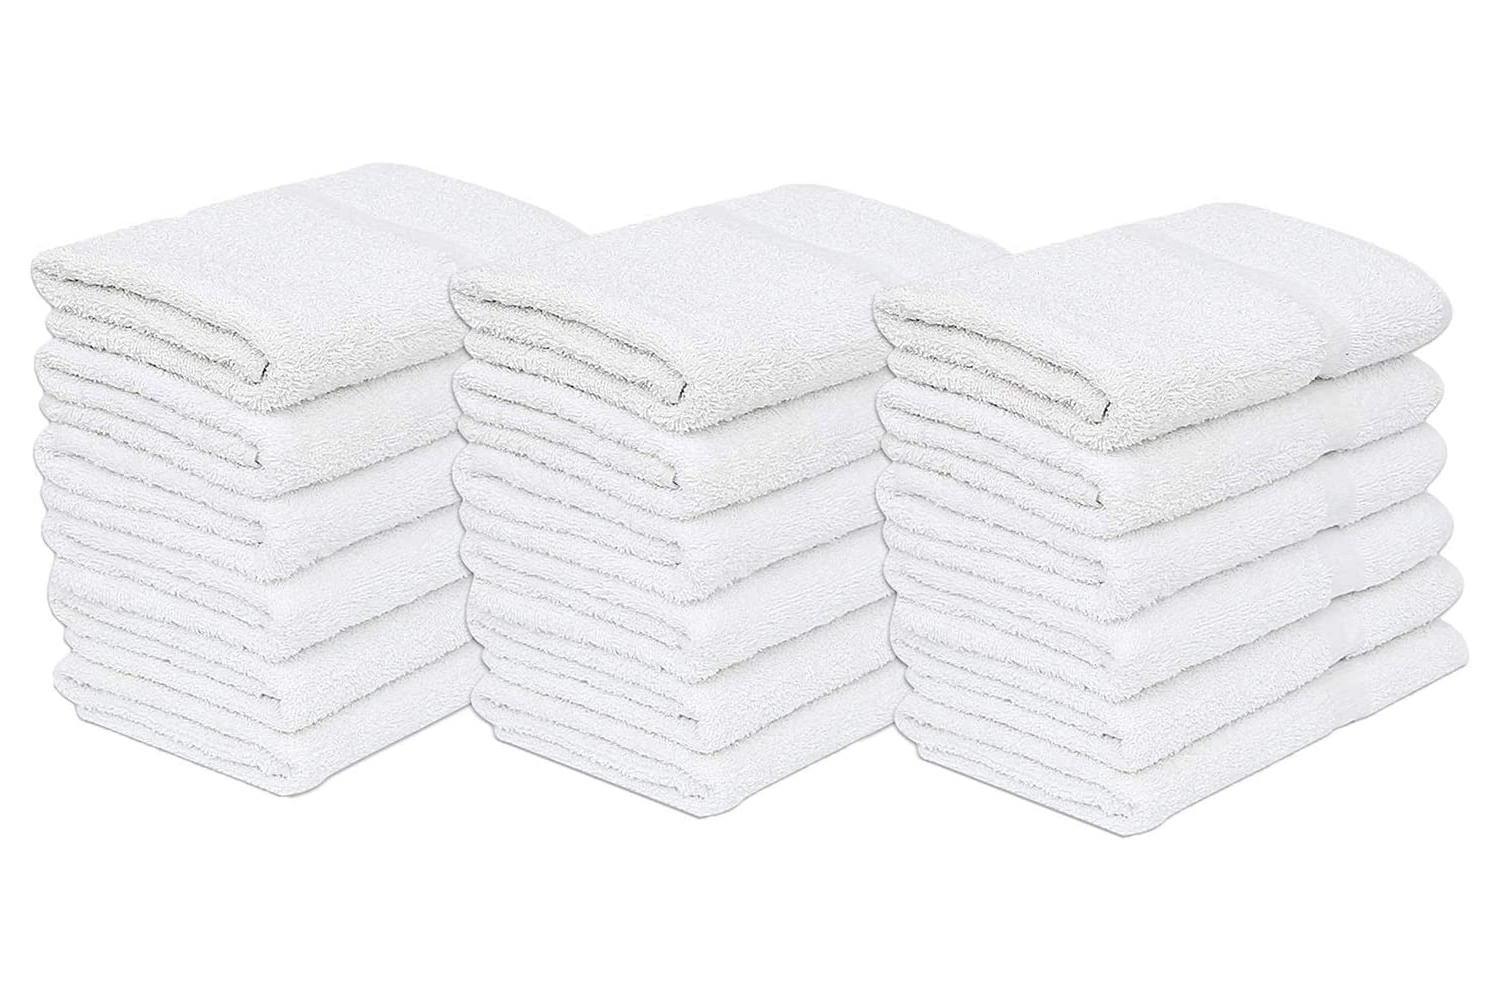 Economy Bulk Bath Towels | 60 Per Case | Multiple Sizes